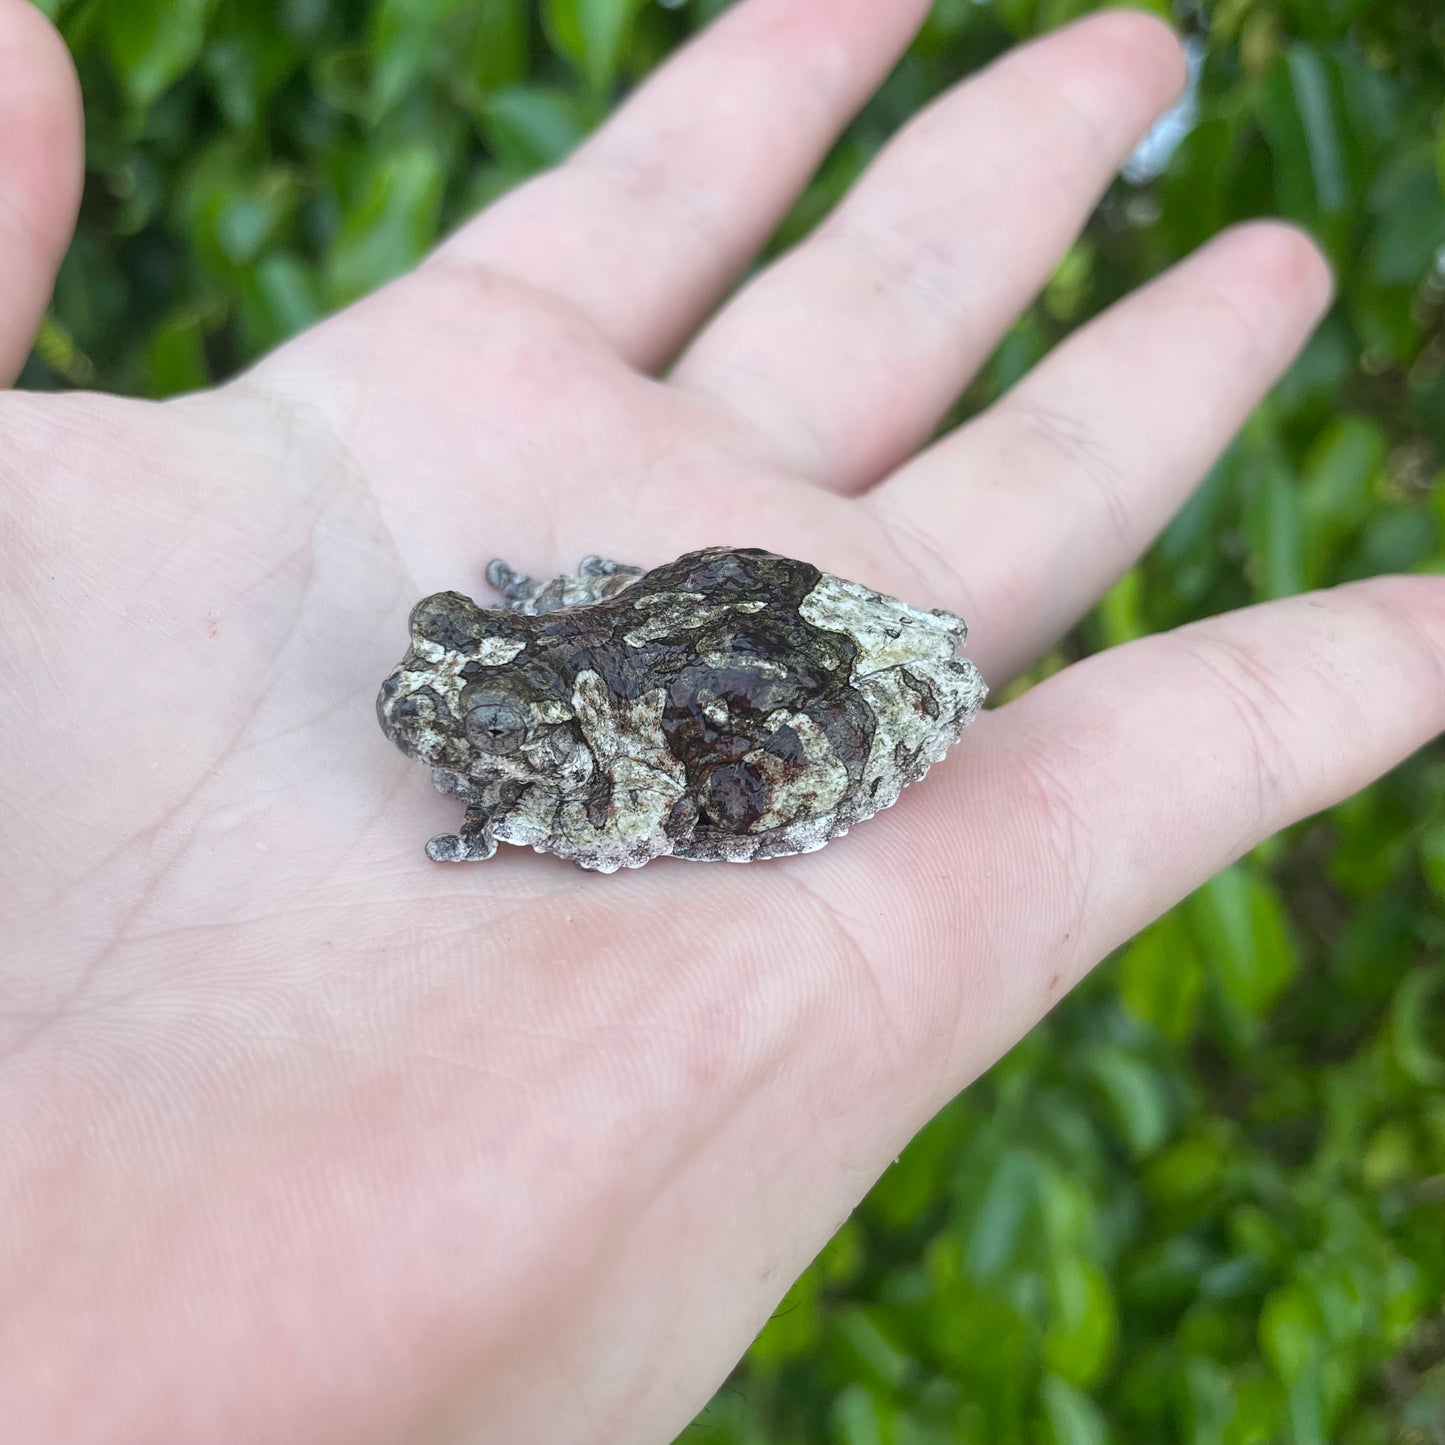 South American Bird Poop Tree Frog